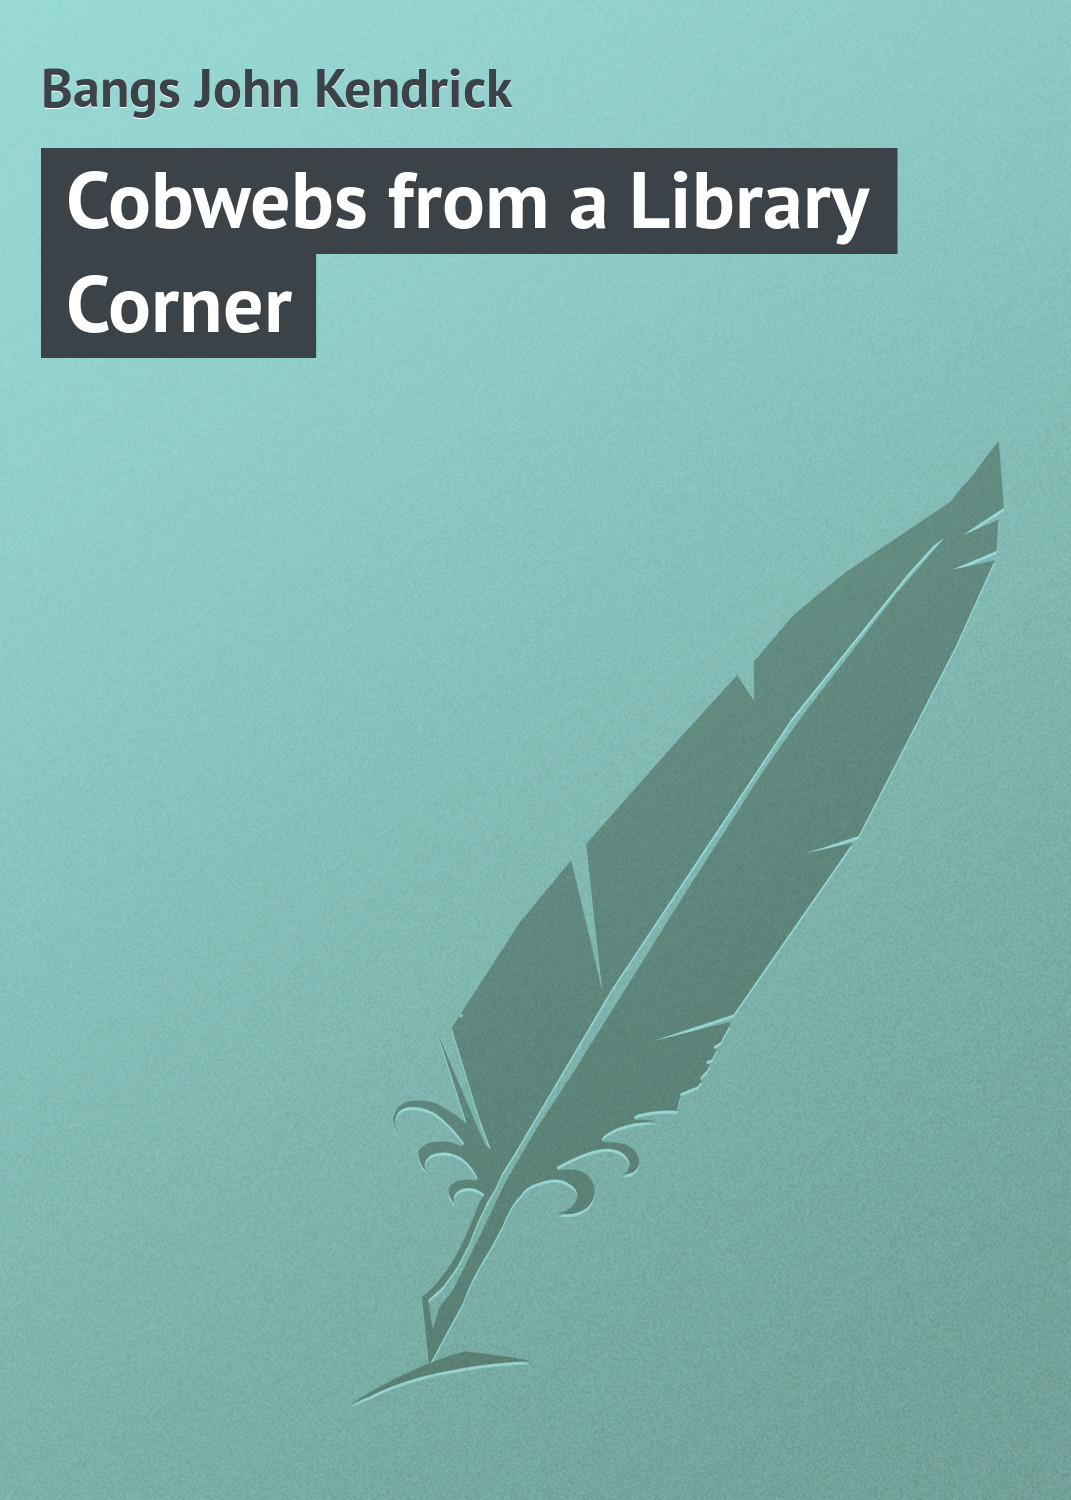 Книга Cobwebs from a Library Corner из серии , созданная John Bangs, может относится к жанру Поэзия, Зарубежная классика, Зарубежные стихи, Иностранные языки. Стоимость электронной книги Cobwebs from a Library Corner с идентификатором 23148299 составляет 5.99 руб.